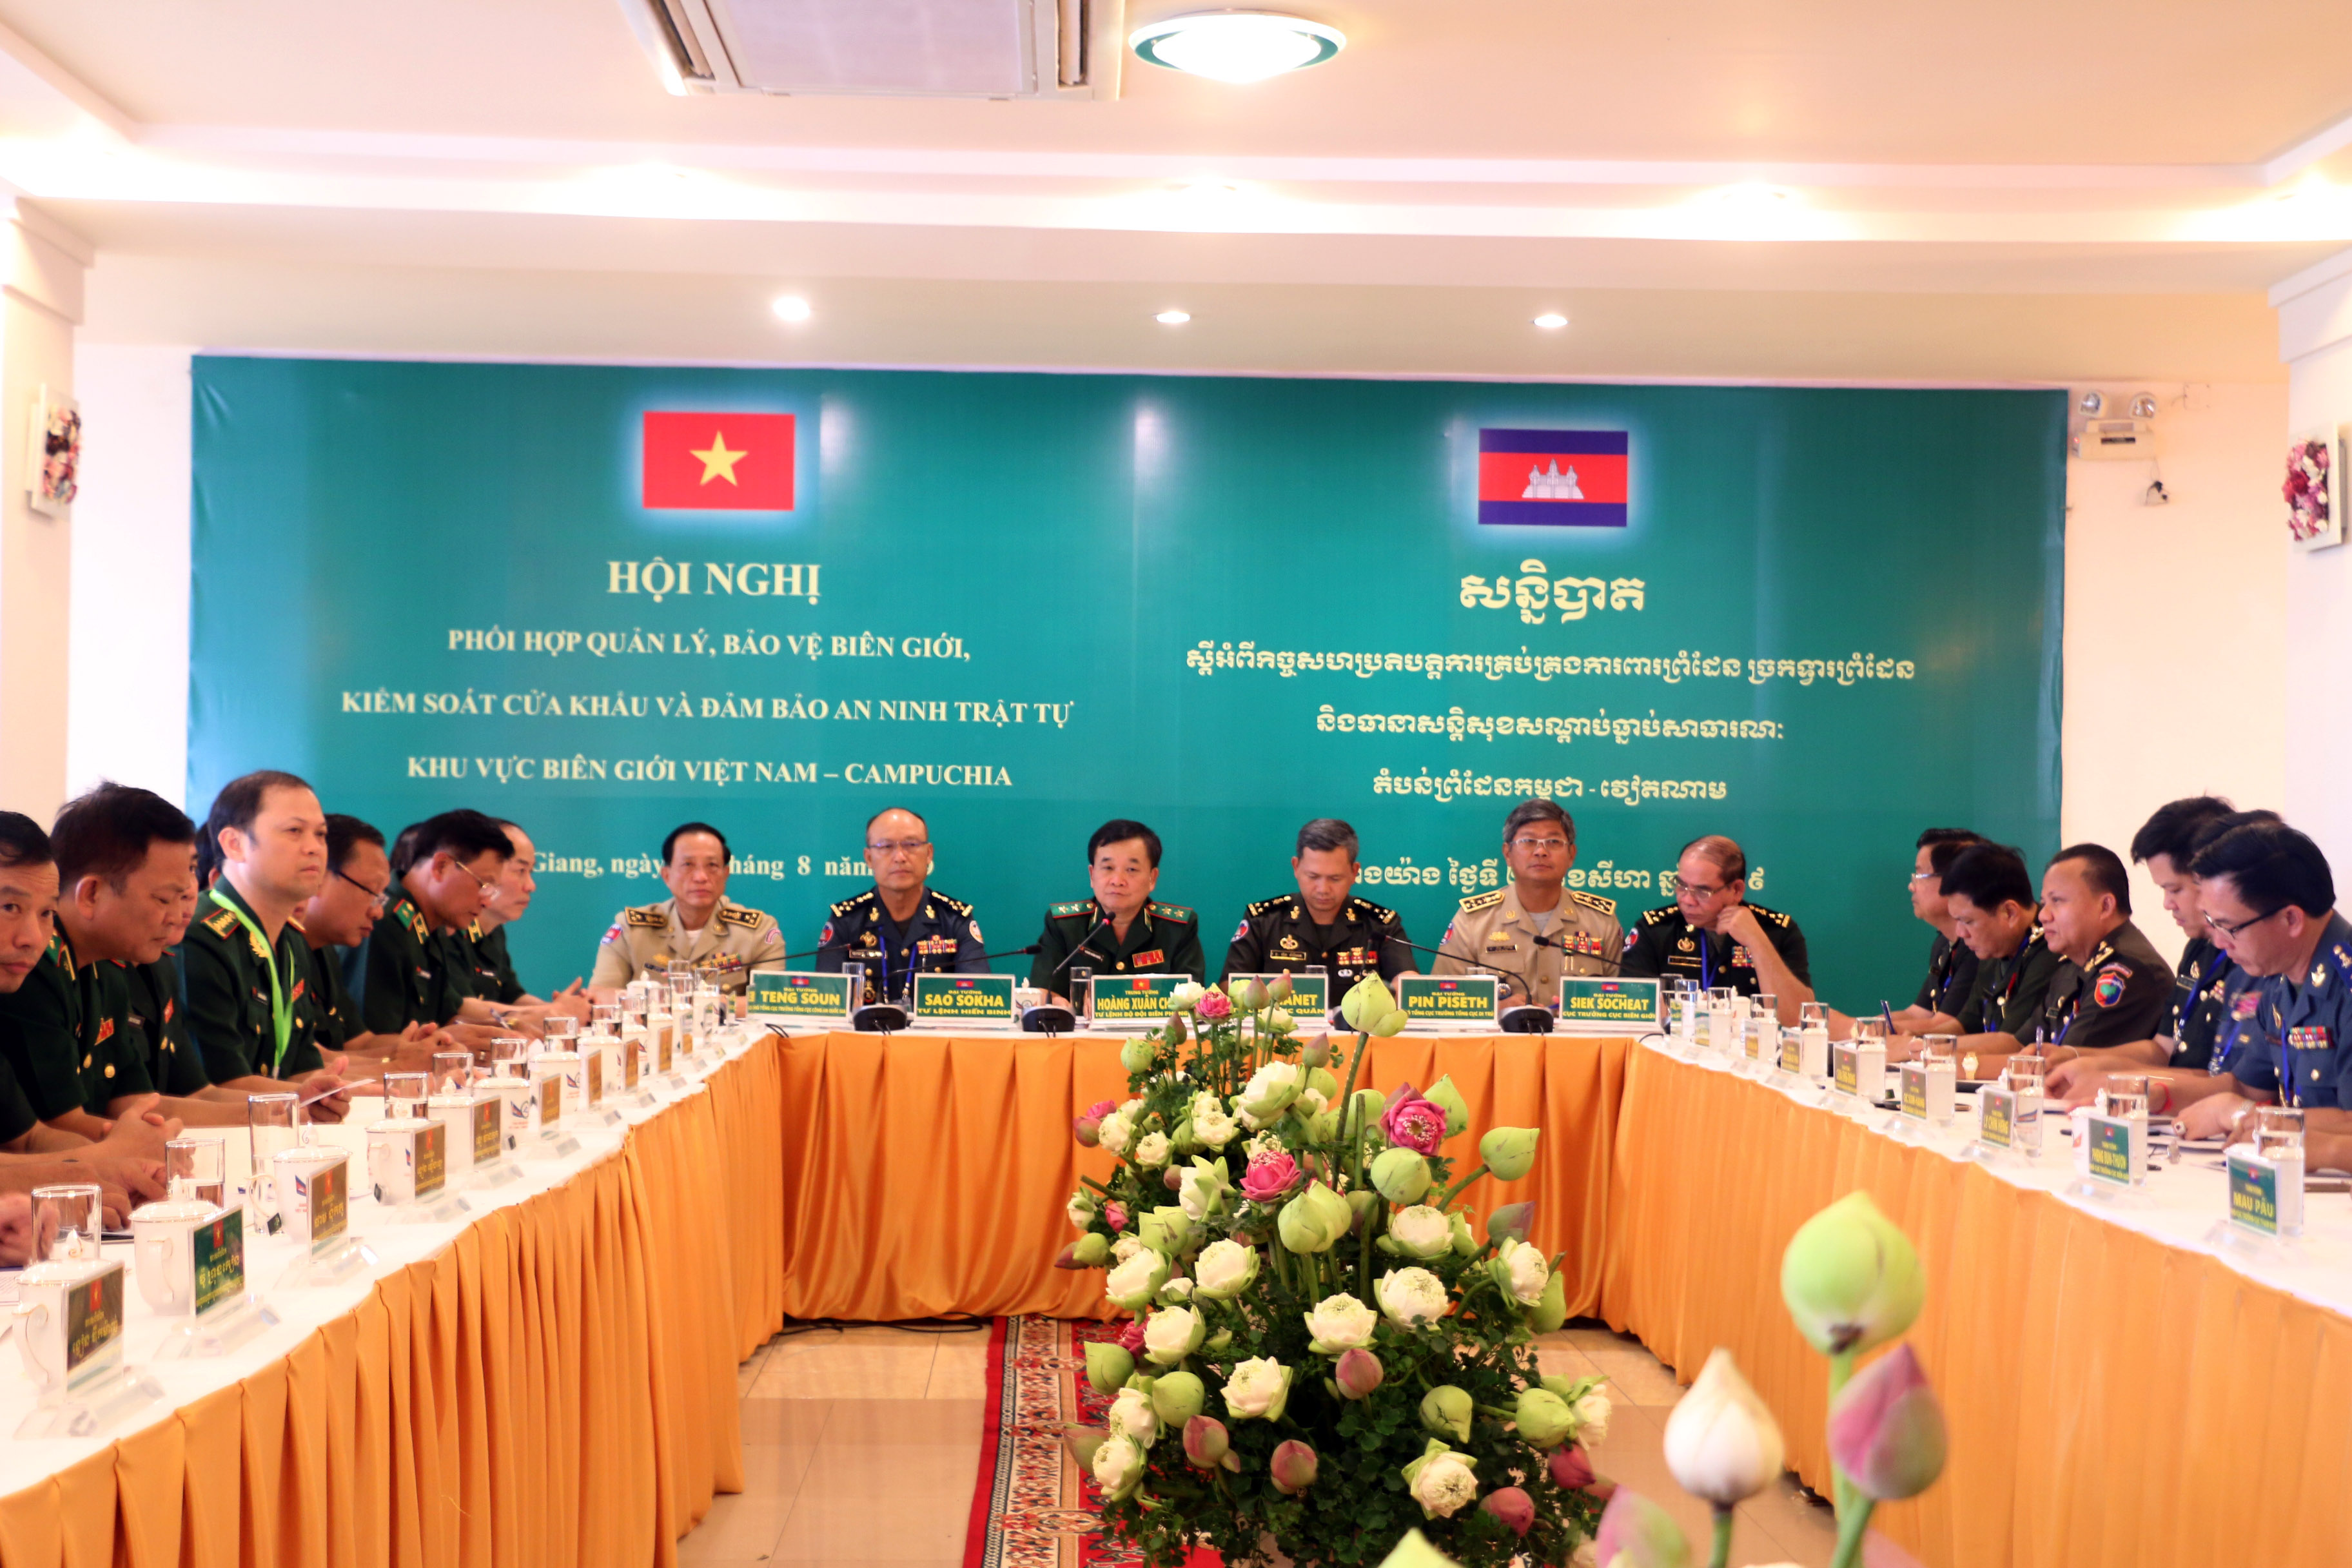 Nâng cao công tác phối hợp quản lý, bảo vệ biên giới giữa Việt Nam và Campuchia